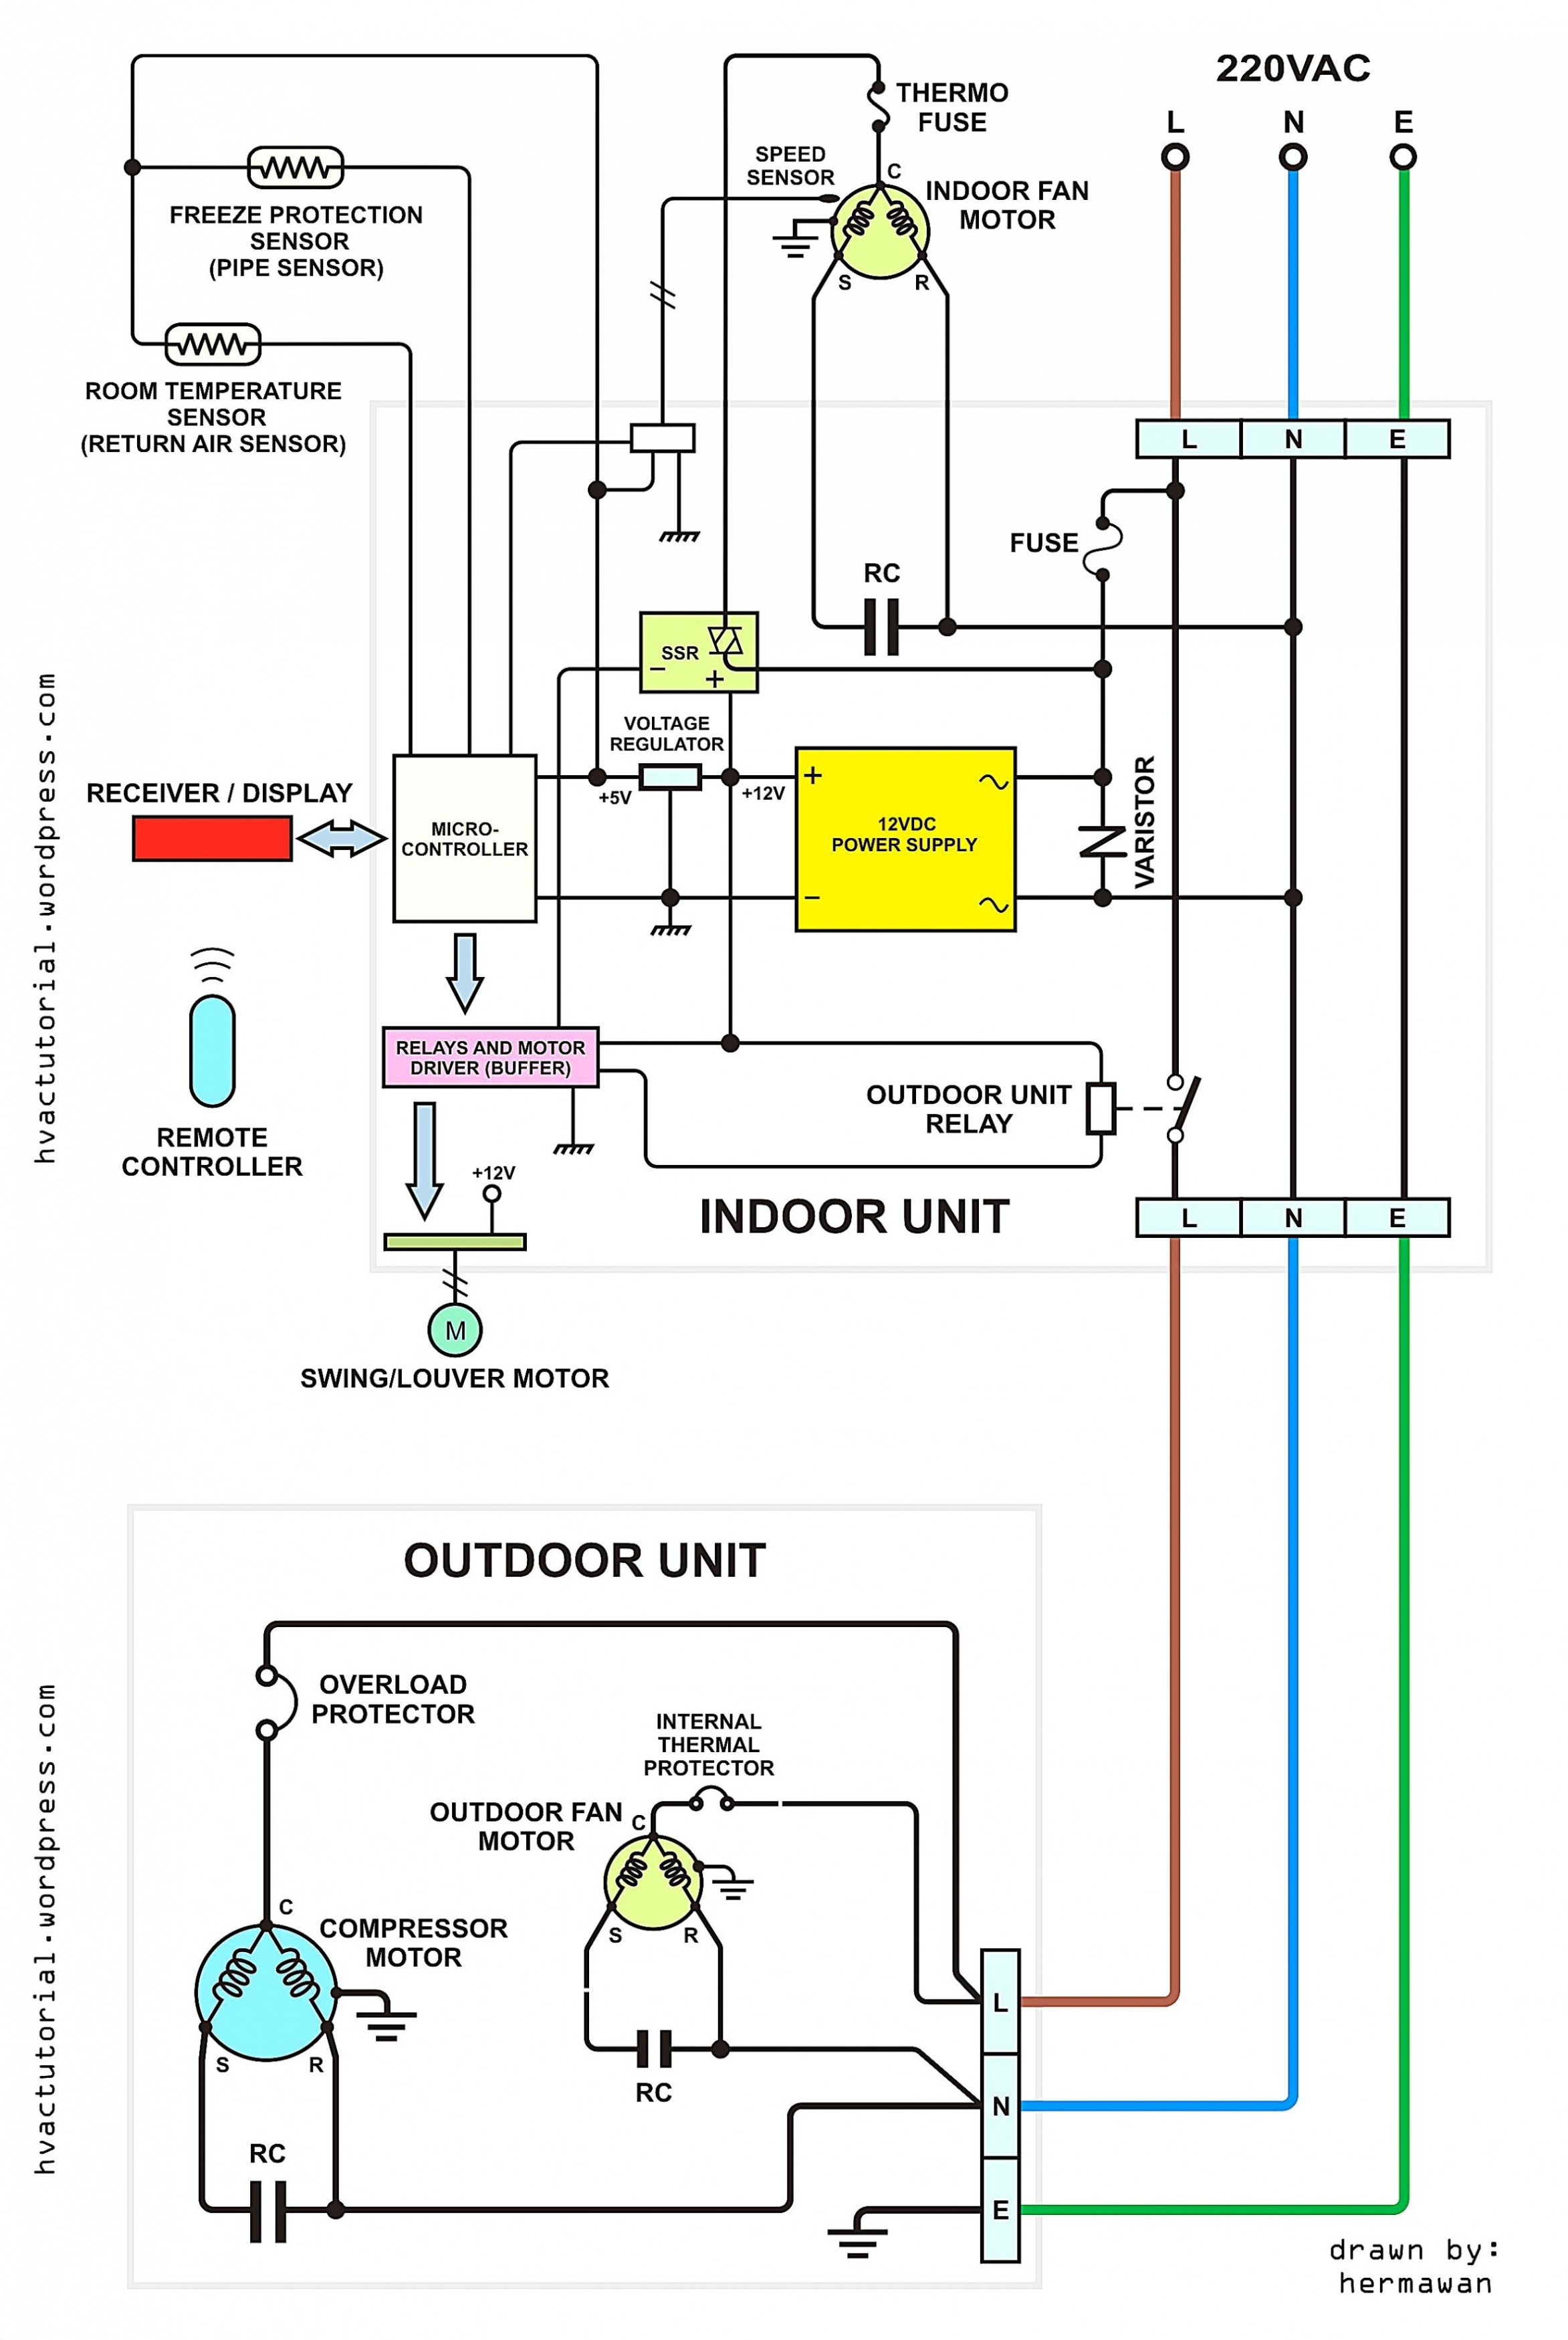 Coleman Mach Rv Thermostat Wiring Diagram | Manual E-Books - Coleman Mach Rv Thermostat Wiring Diagram